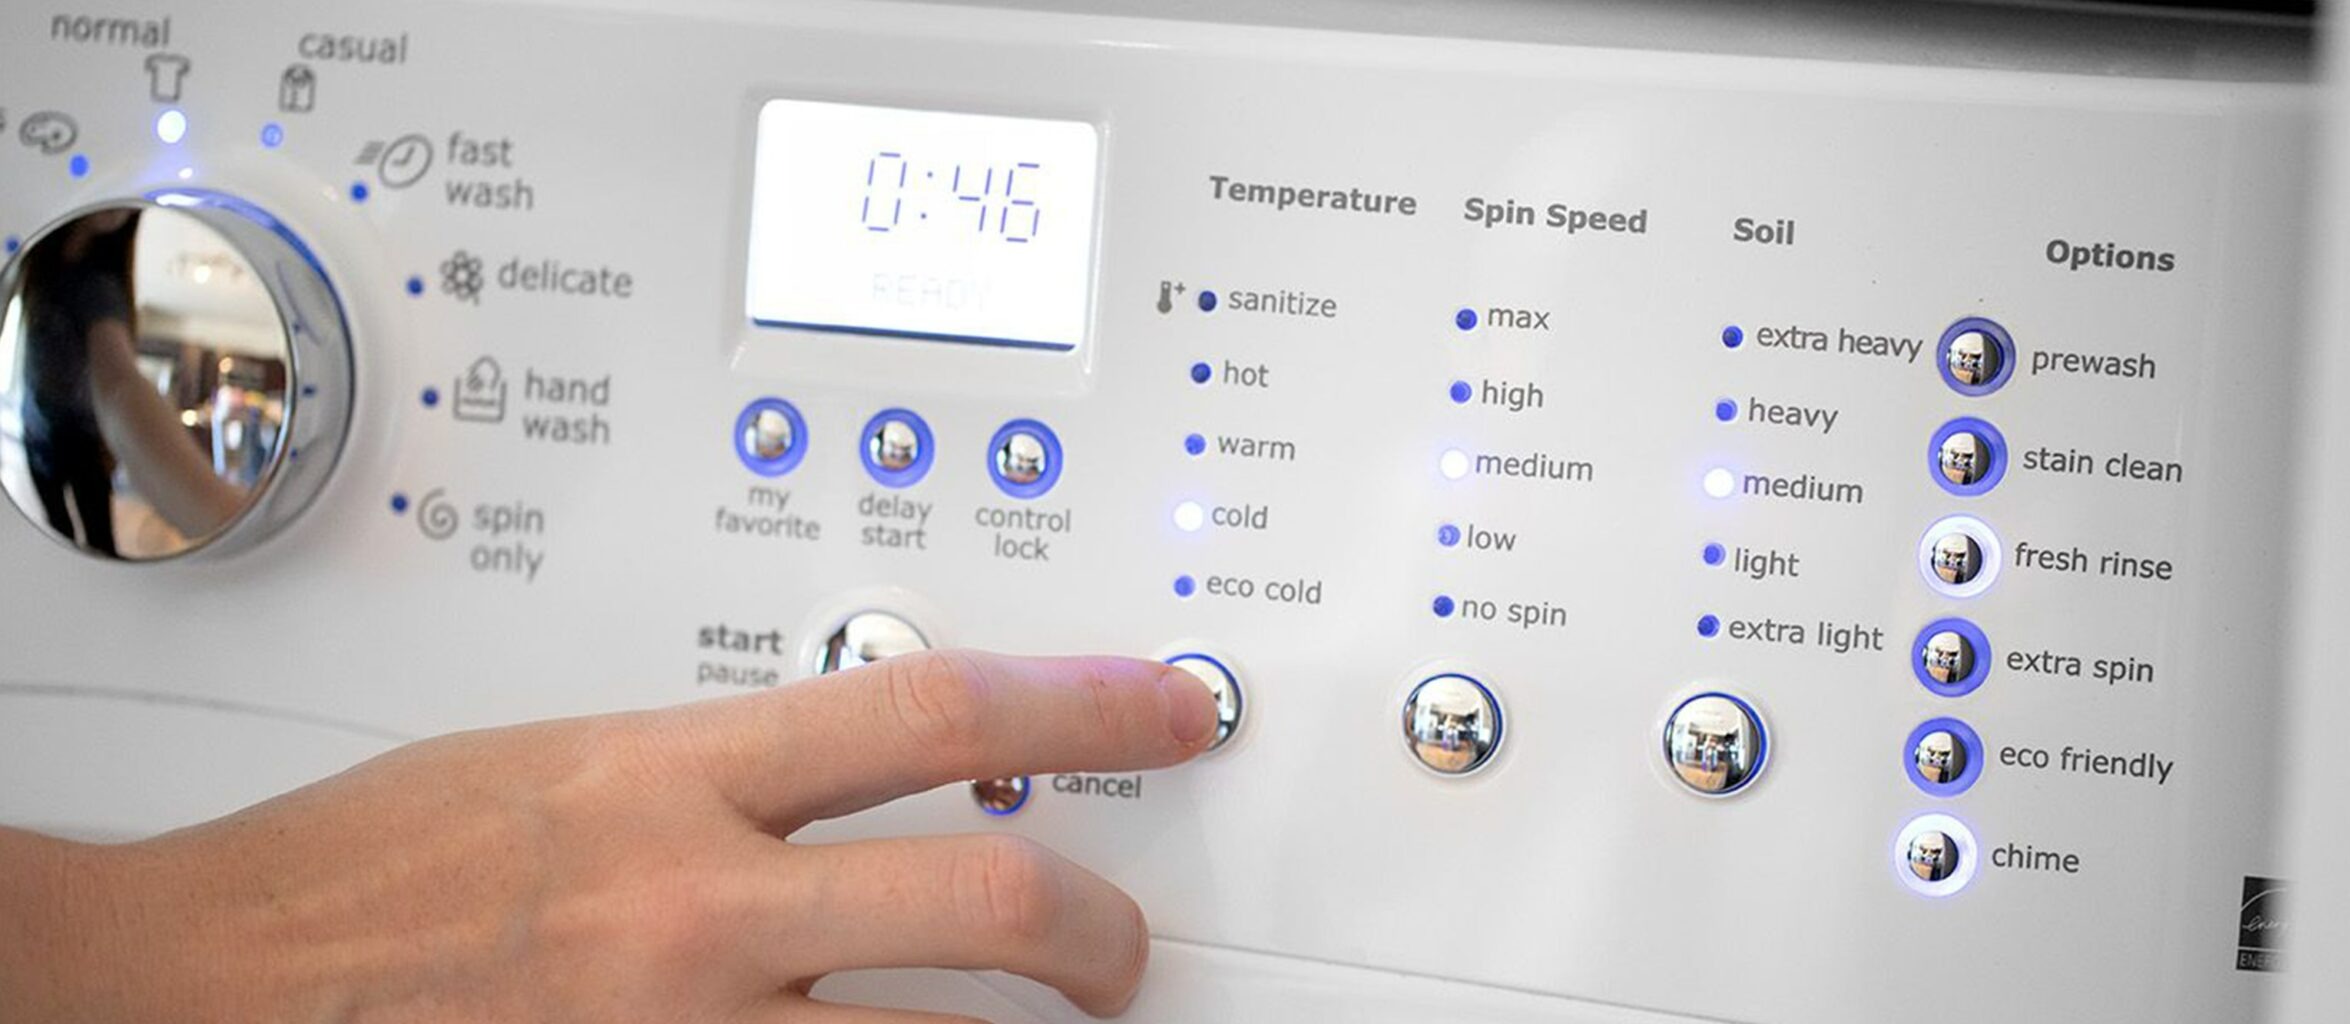 تنظیمات لباسشویی - دمای آب مناسب ماشین لباسشویی